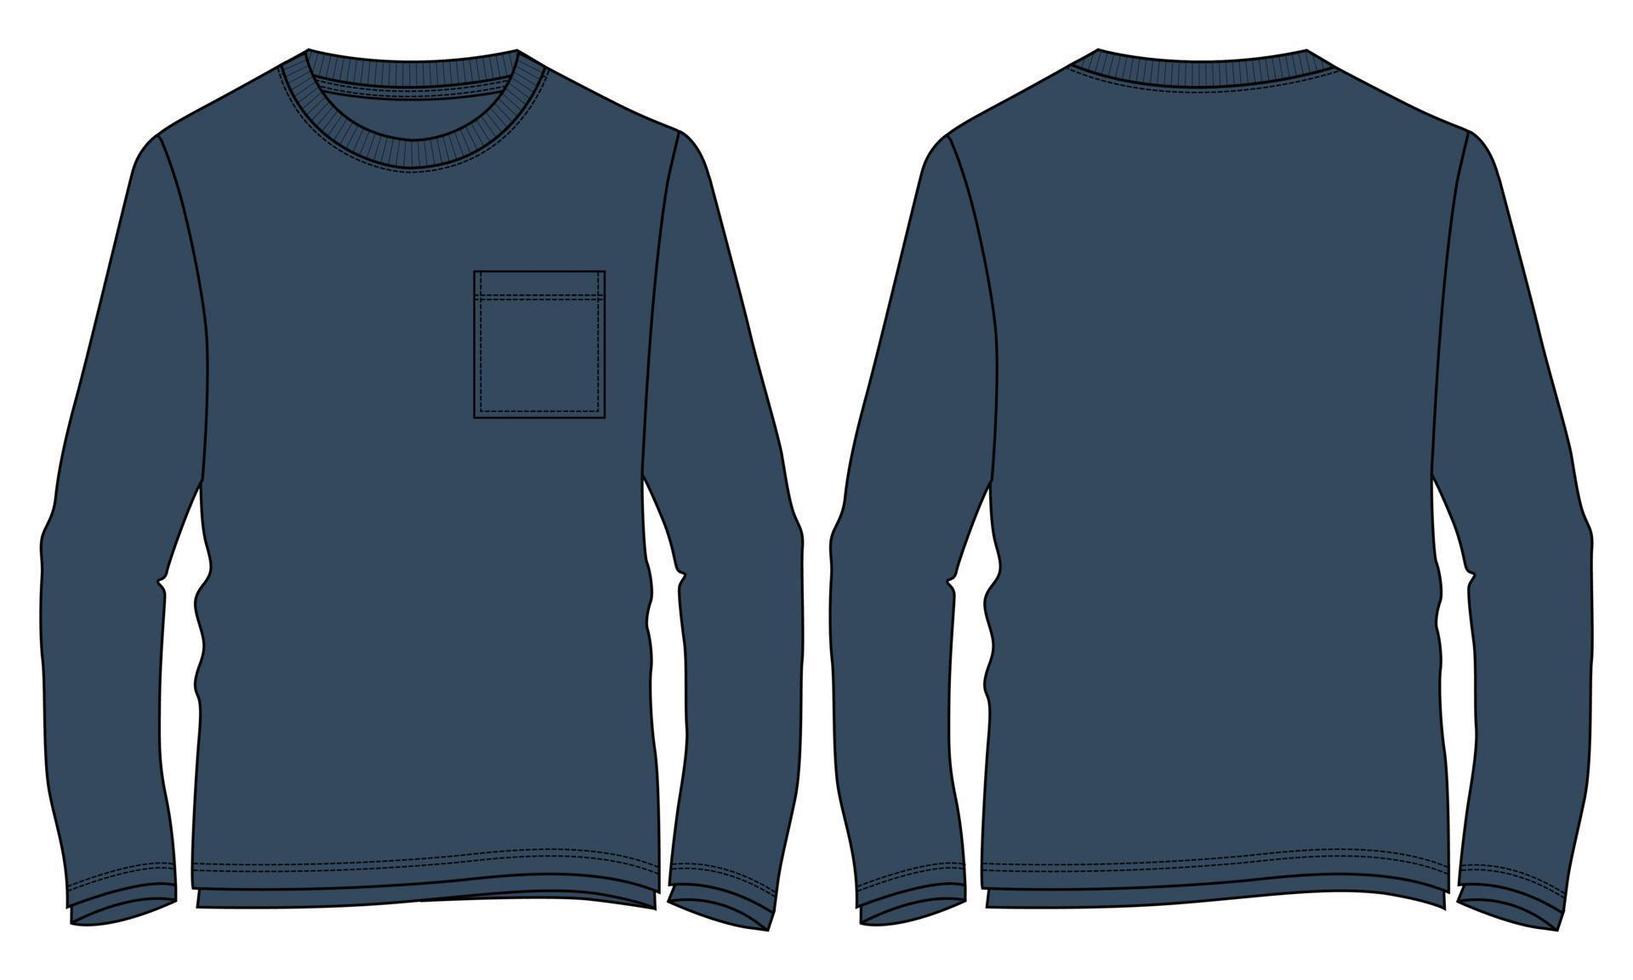 camiseta de manga longa técnica de moda desenho plano ilustração vetorial modelo de cor azul marinho vetor